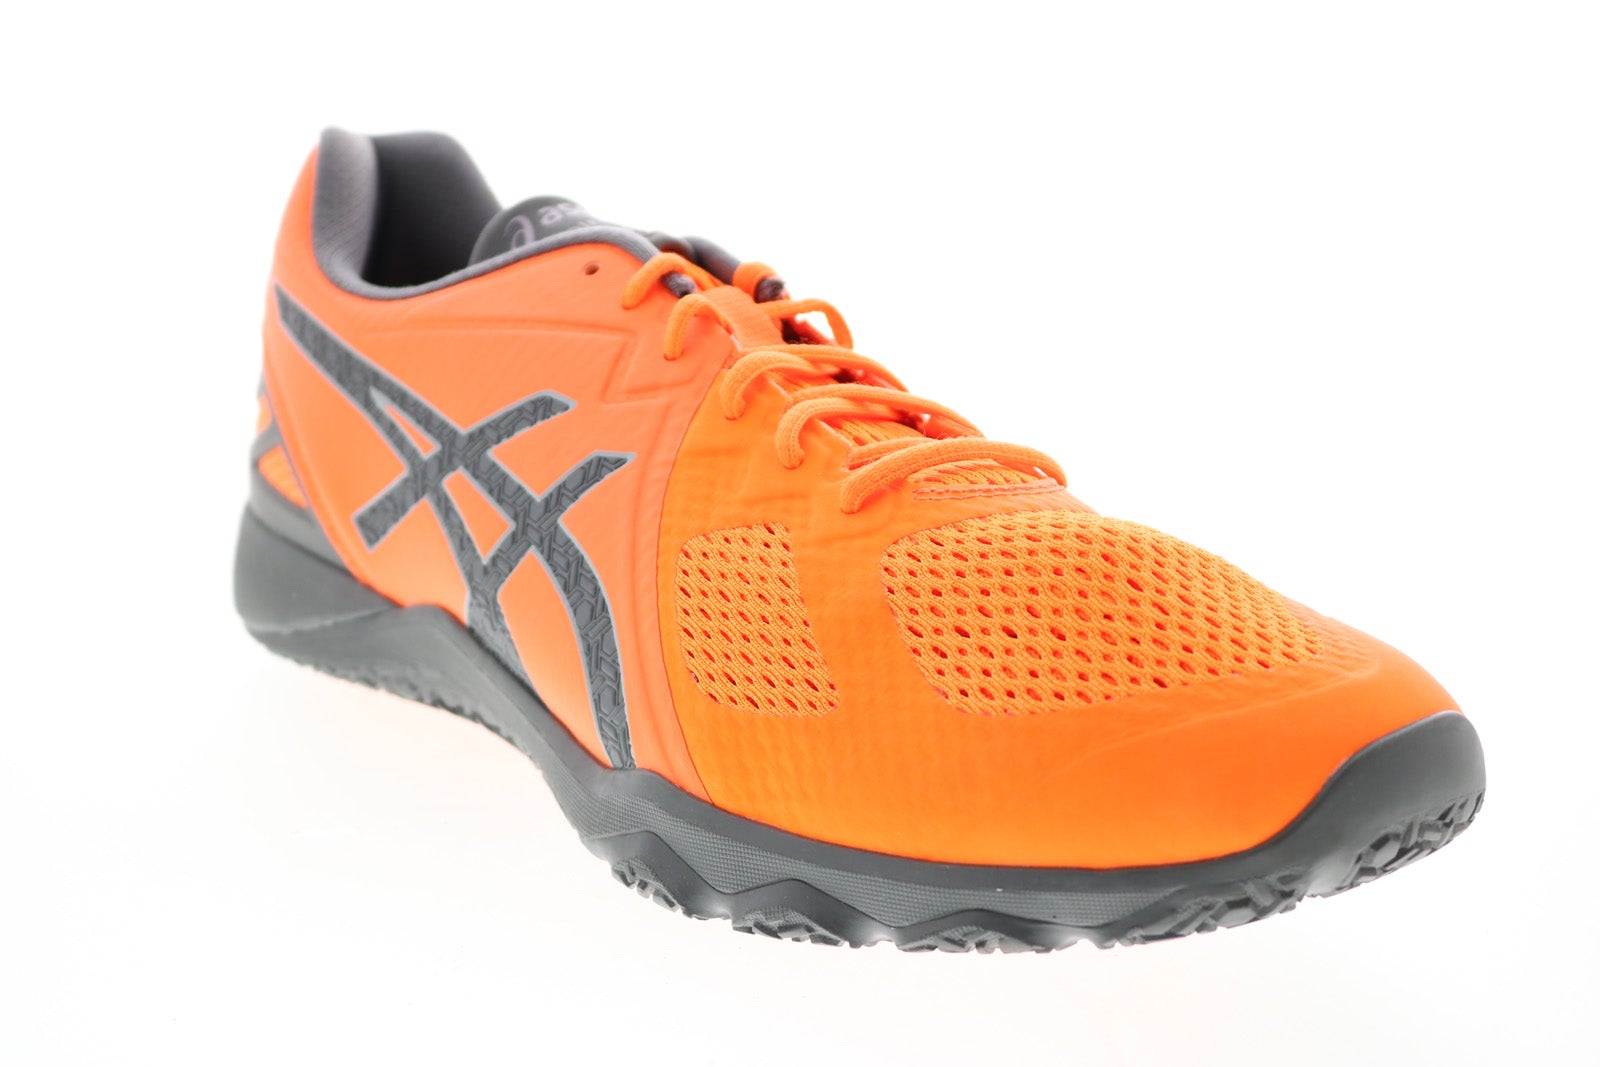 Pase para saber microondas Suavemente Asics Conviction X S703N Mens Orange Athletic Cross Training Shoes - Ruze  Shoes